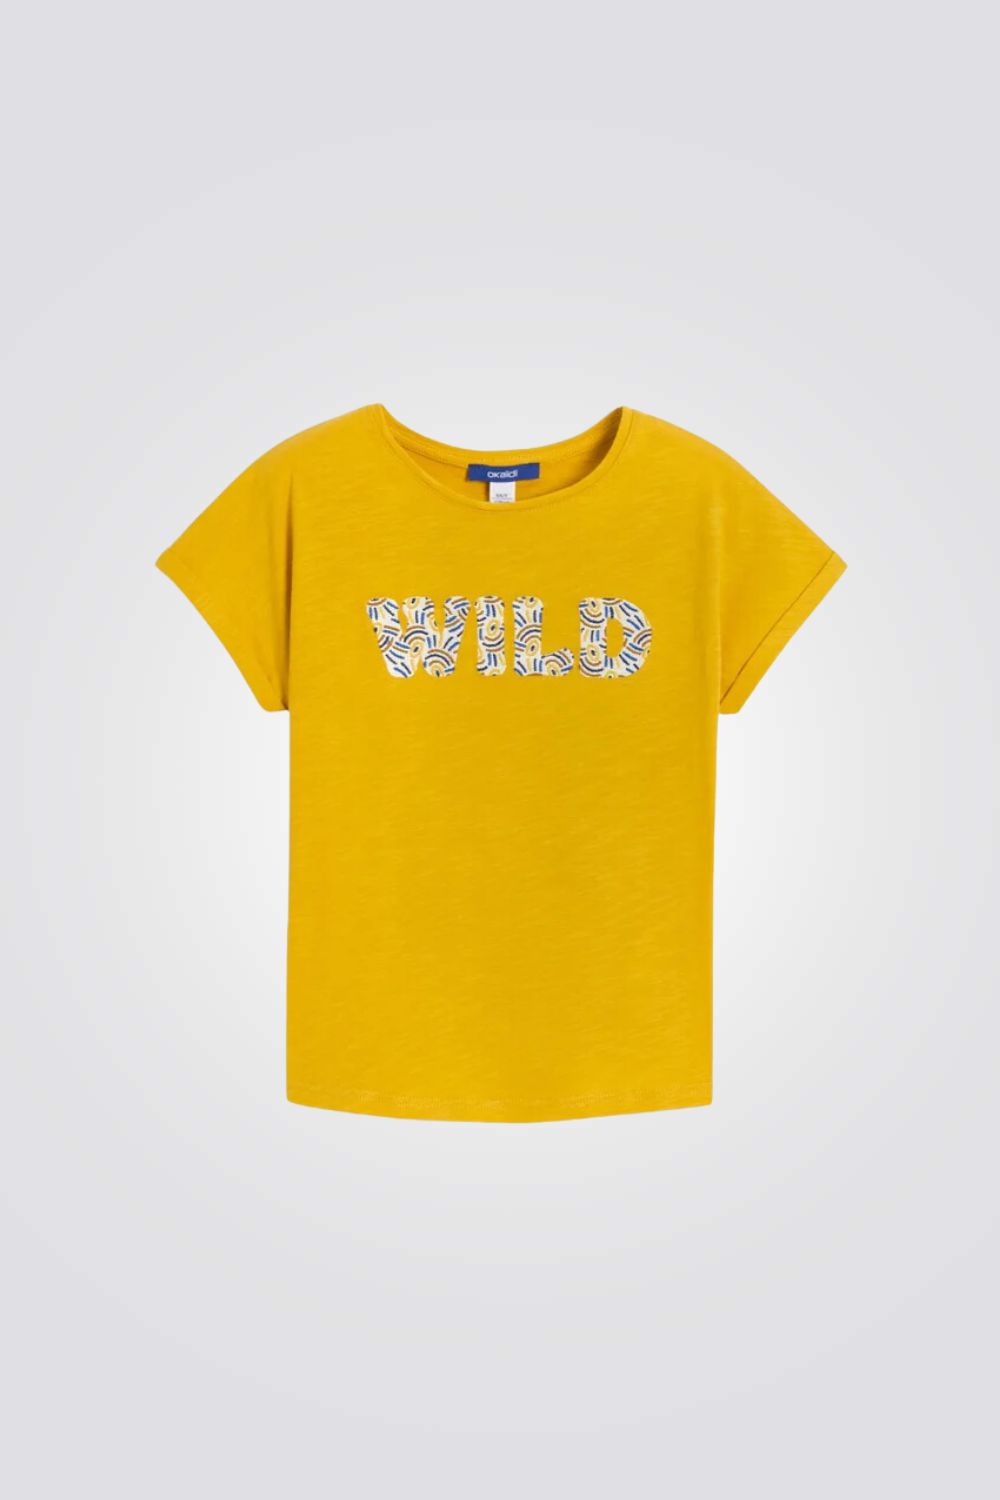 טישירט לילדות בצבע צהוב עם הדפס WILD